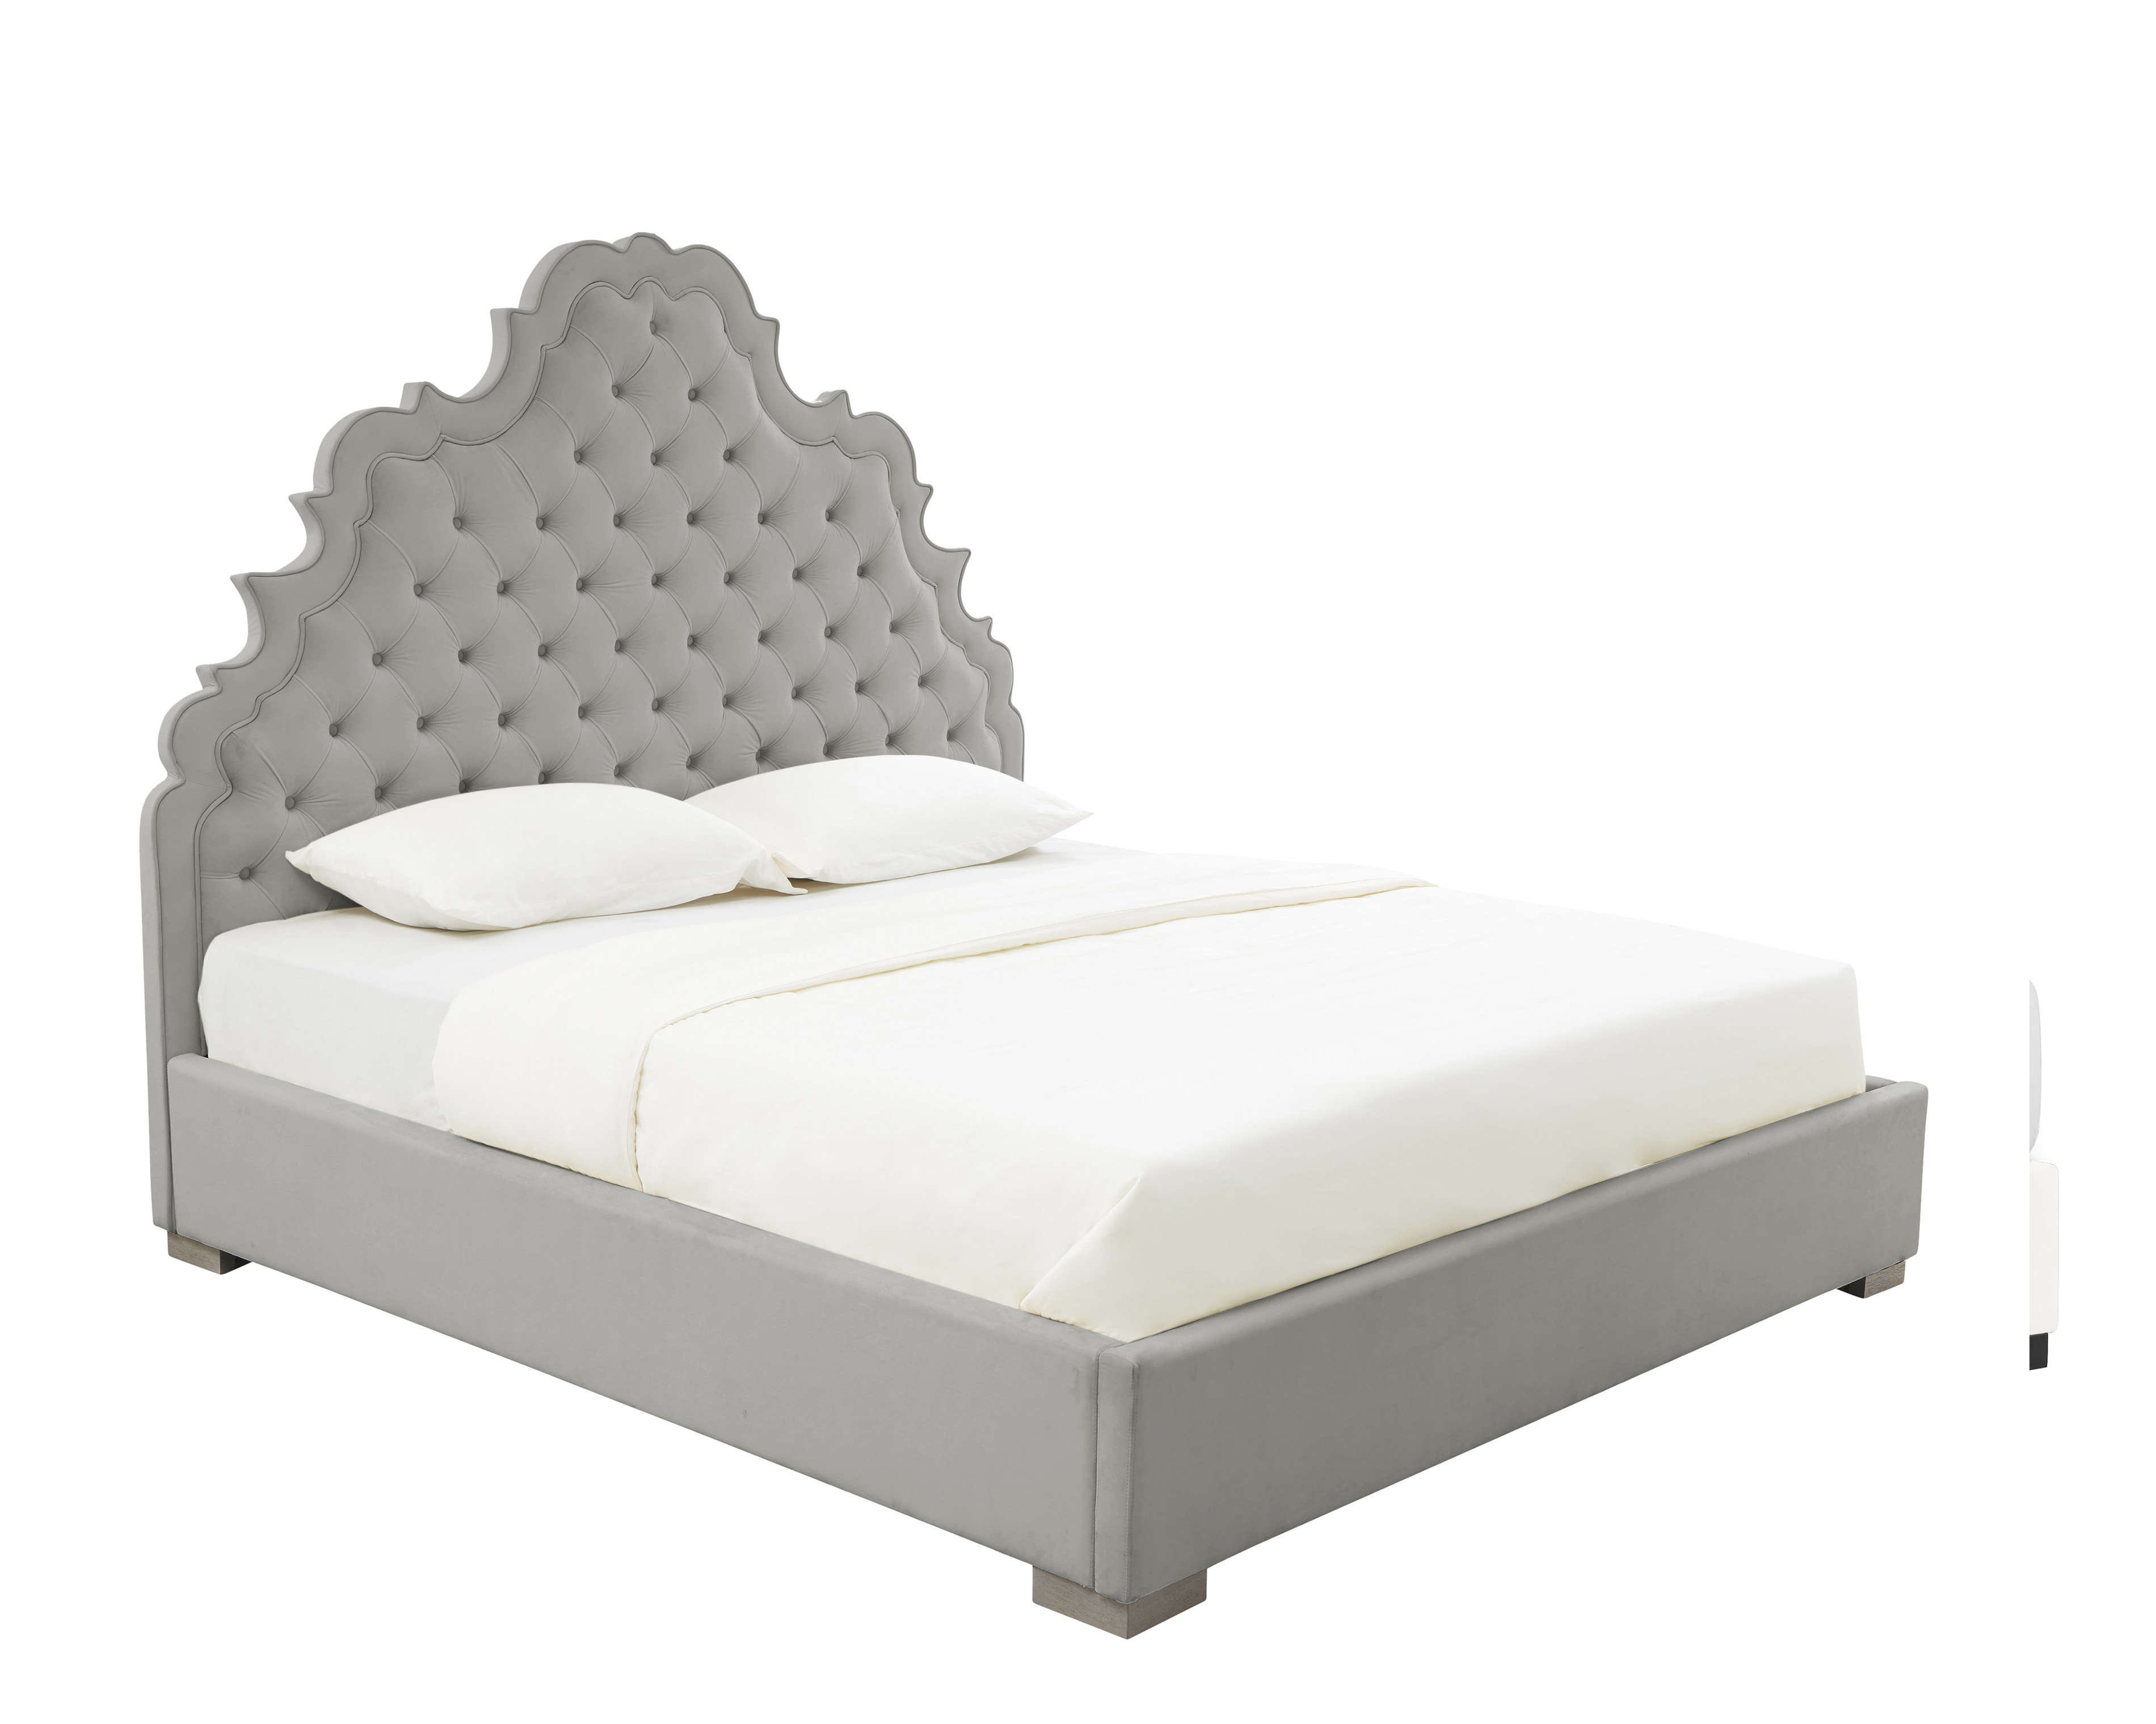 image of Carolina Grey Velvet Bed in King by Inspire Me! Home Decor by Inspire Me! Home Decor with sku:TOV-IHB68220